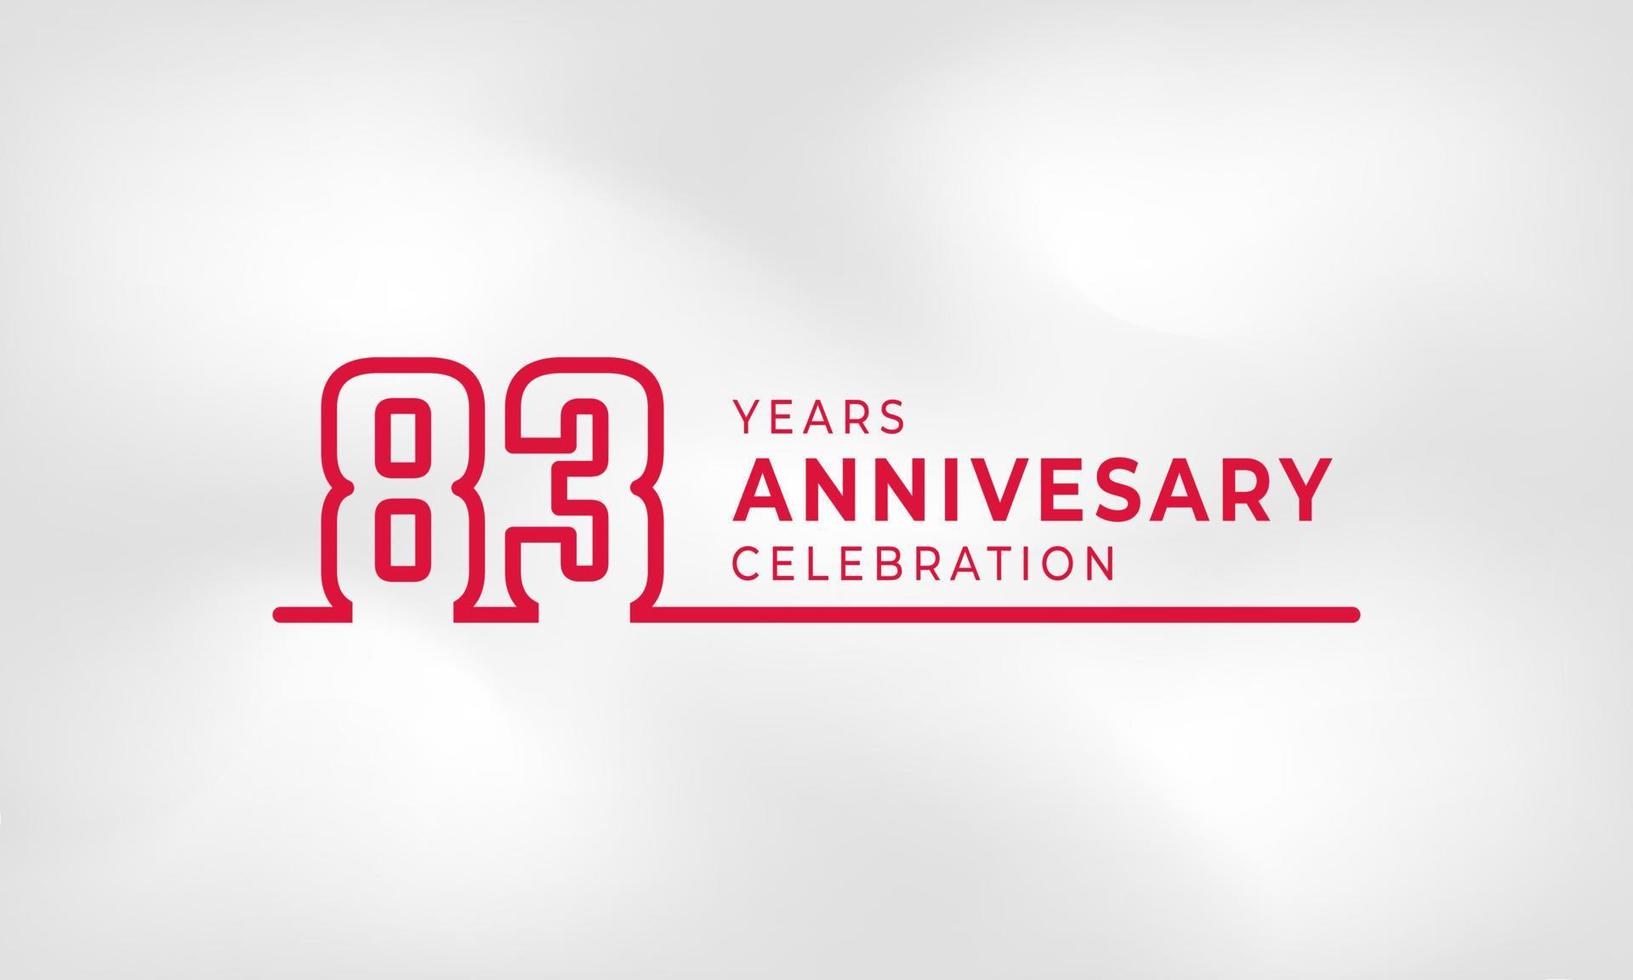 83 års jubileumsfirande länkad logotyp kontur nummer röd färg för festevenemang, bröllop, gratulationskort och inbjudan isolerad på vit texturbakgrund vektor